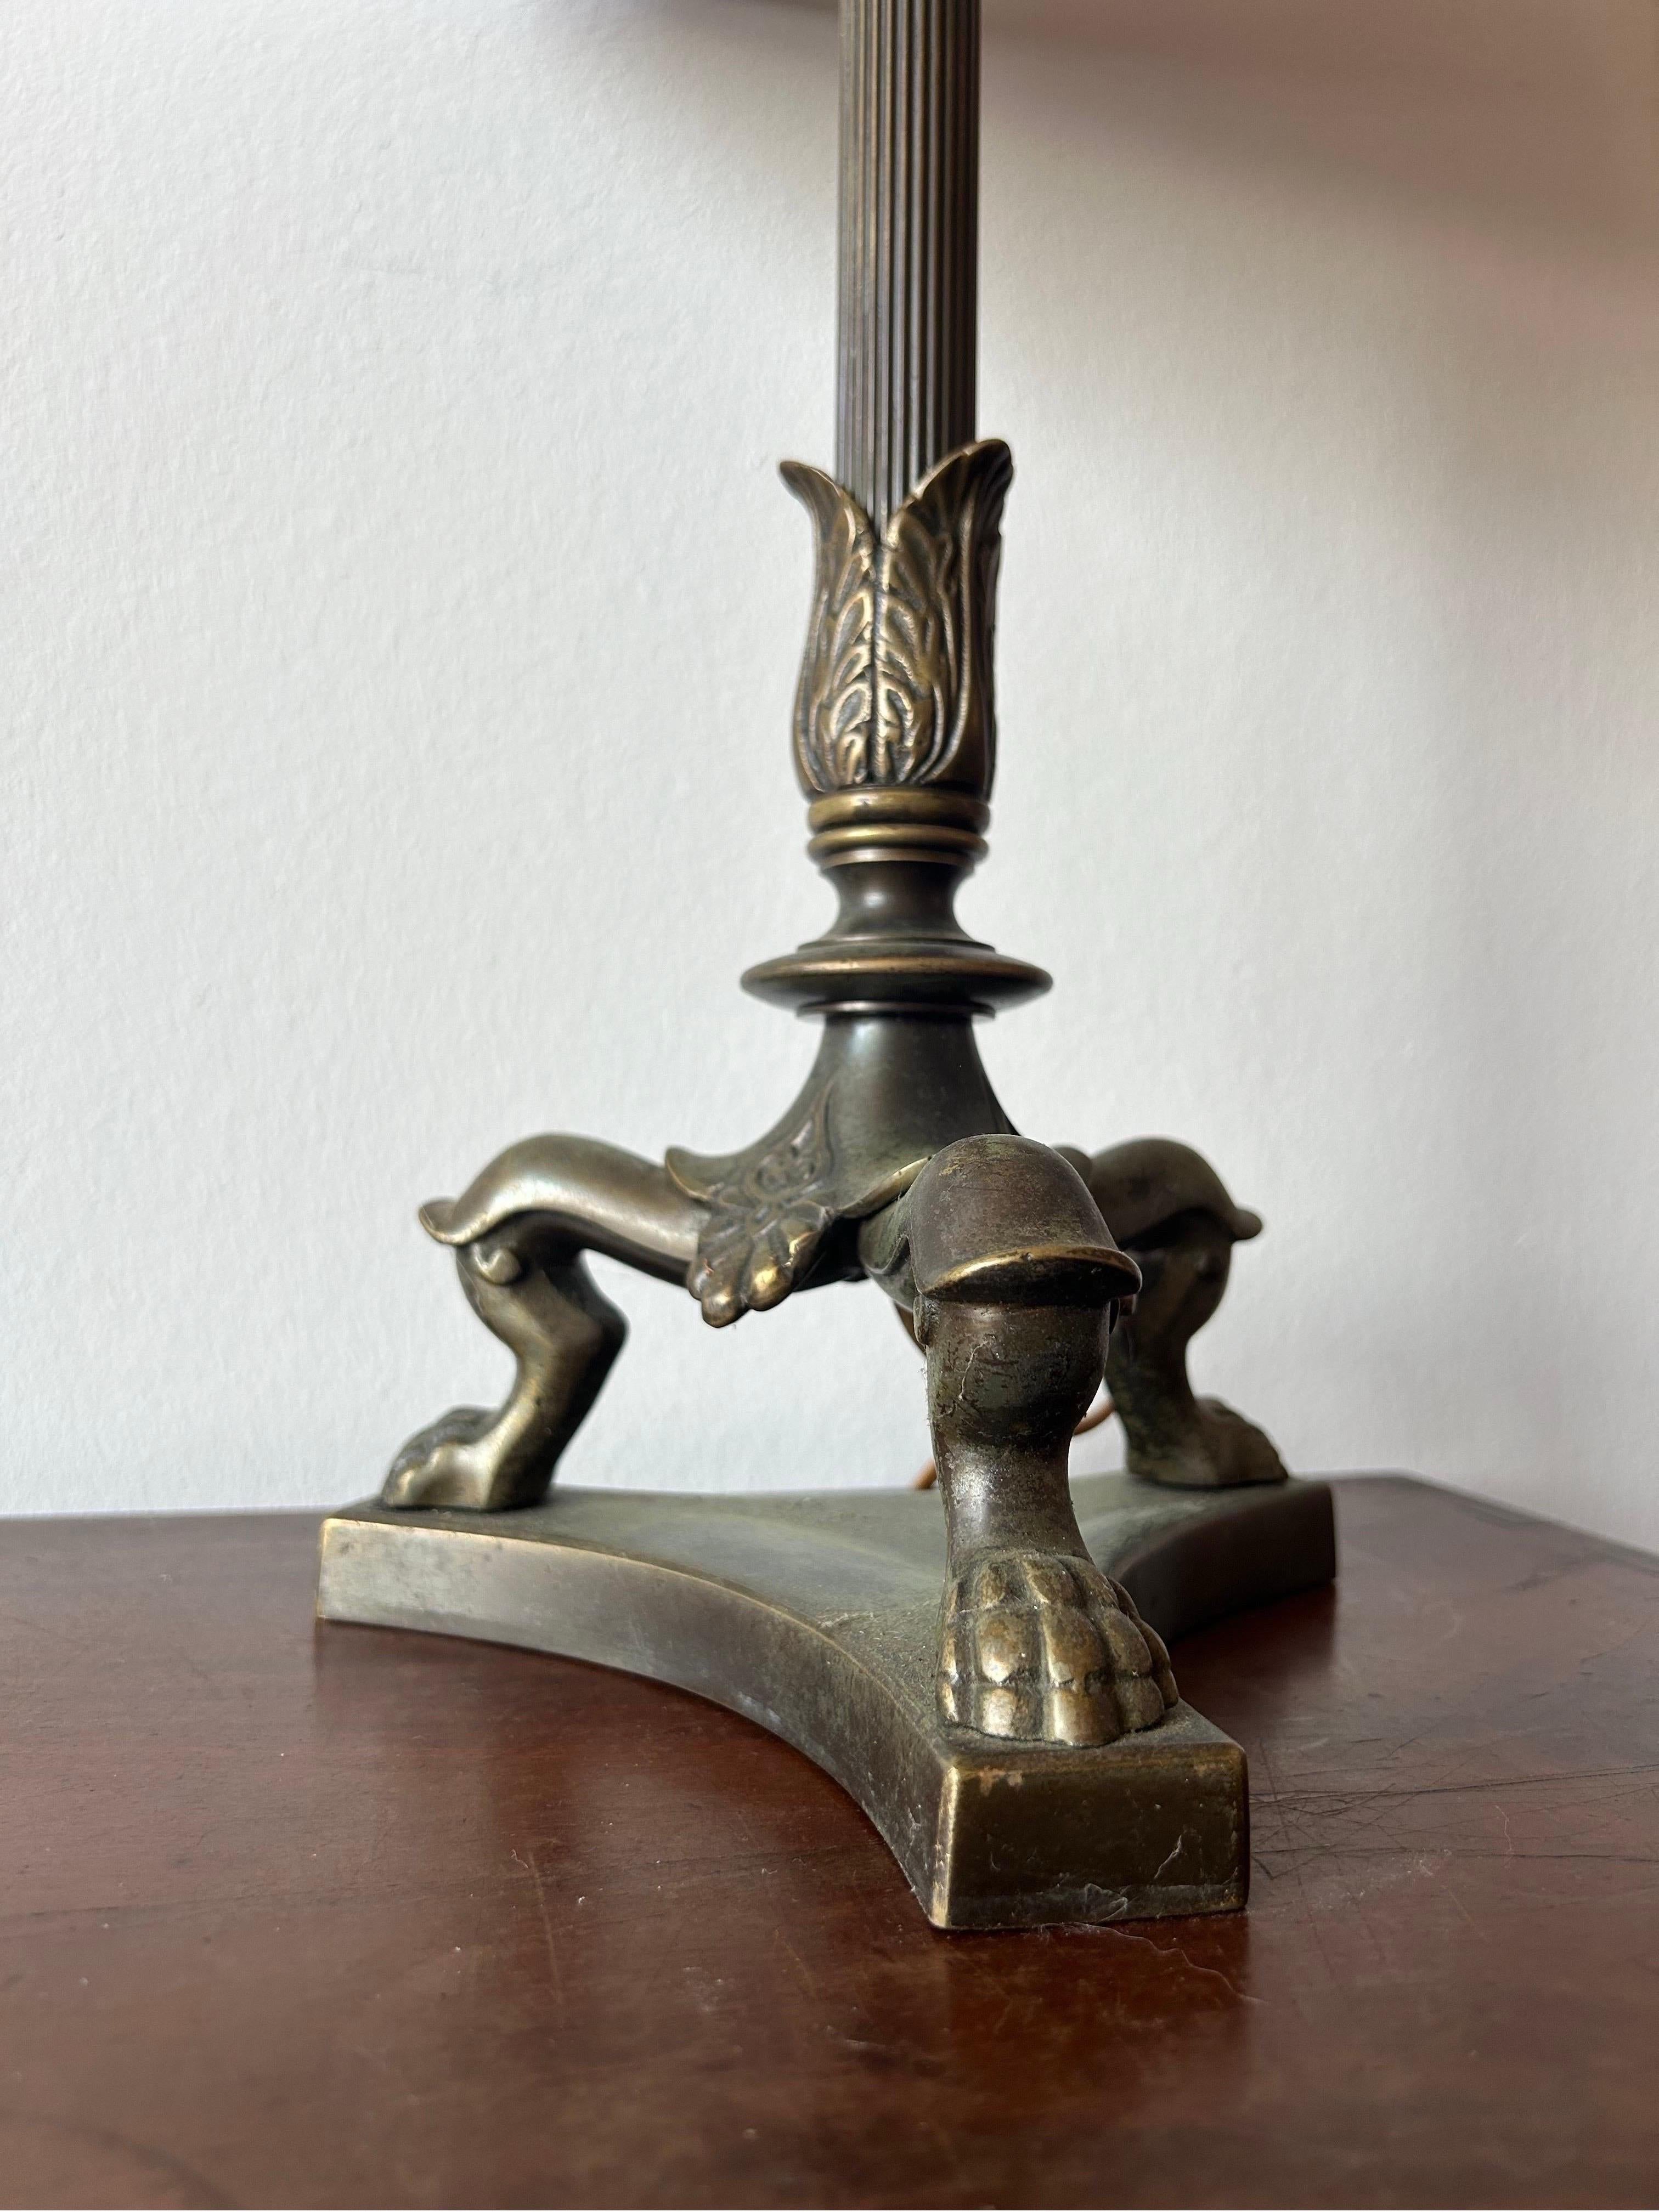 Lampe en bronze réalisée par un artiste et attribuée au sculpteur danois TH Stein. Elle a été fabriquée dans les années 1850.
La lampe fait clairement référence à Pompéi et à Herculanum.
La lampe est fabriquée en bronze massif avec une belle patine